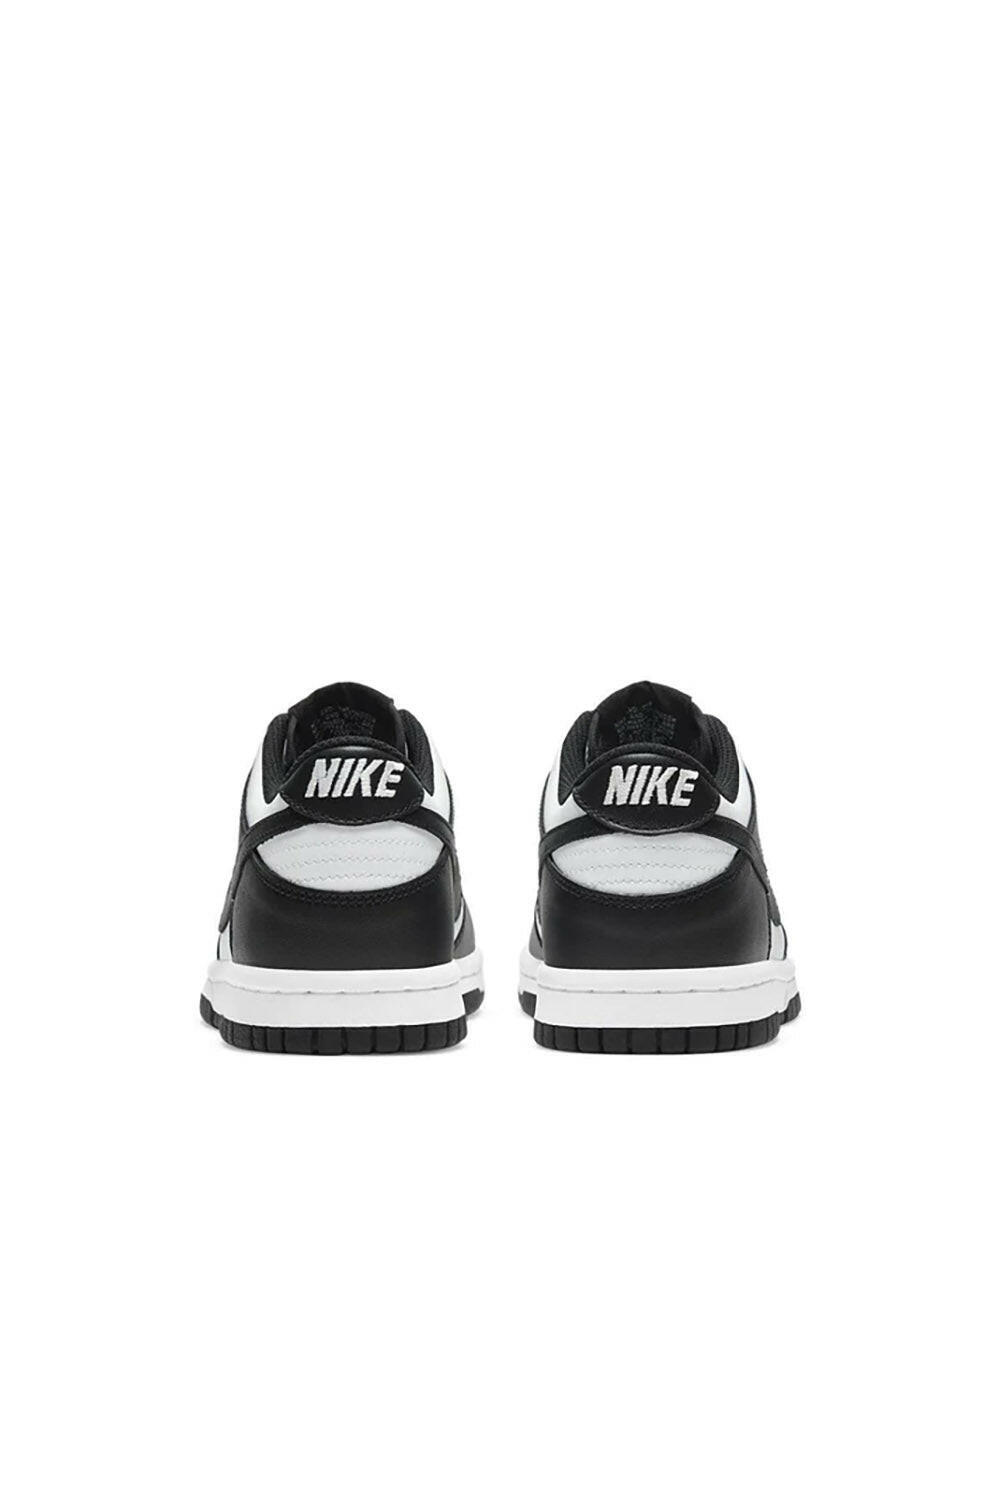  Nike Dunk Low Black White Woman - 3